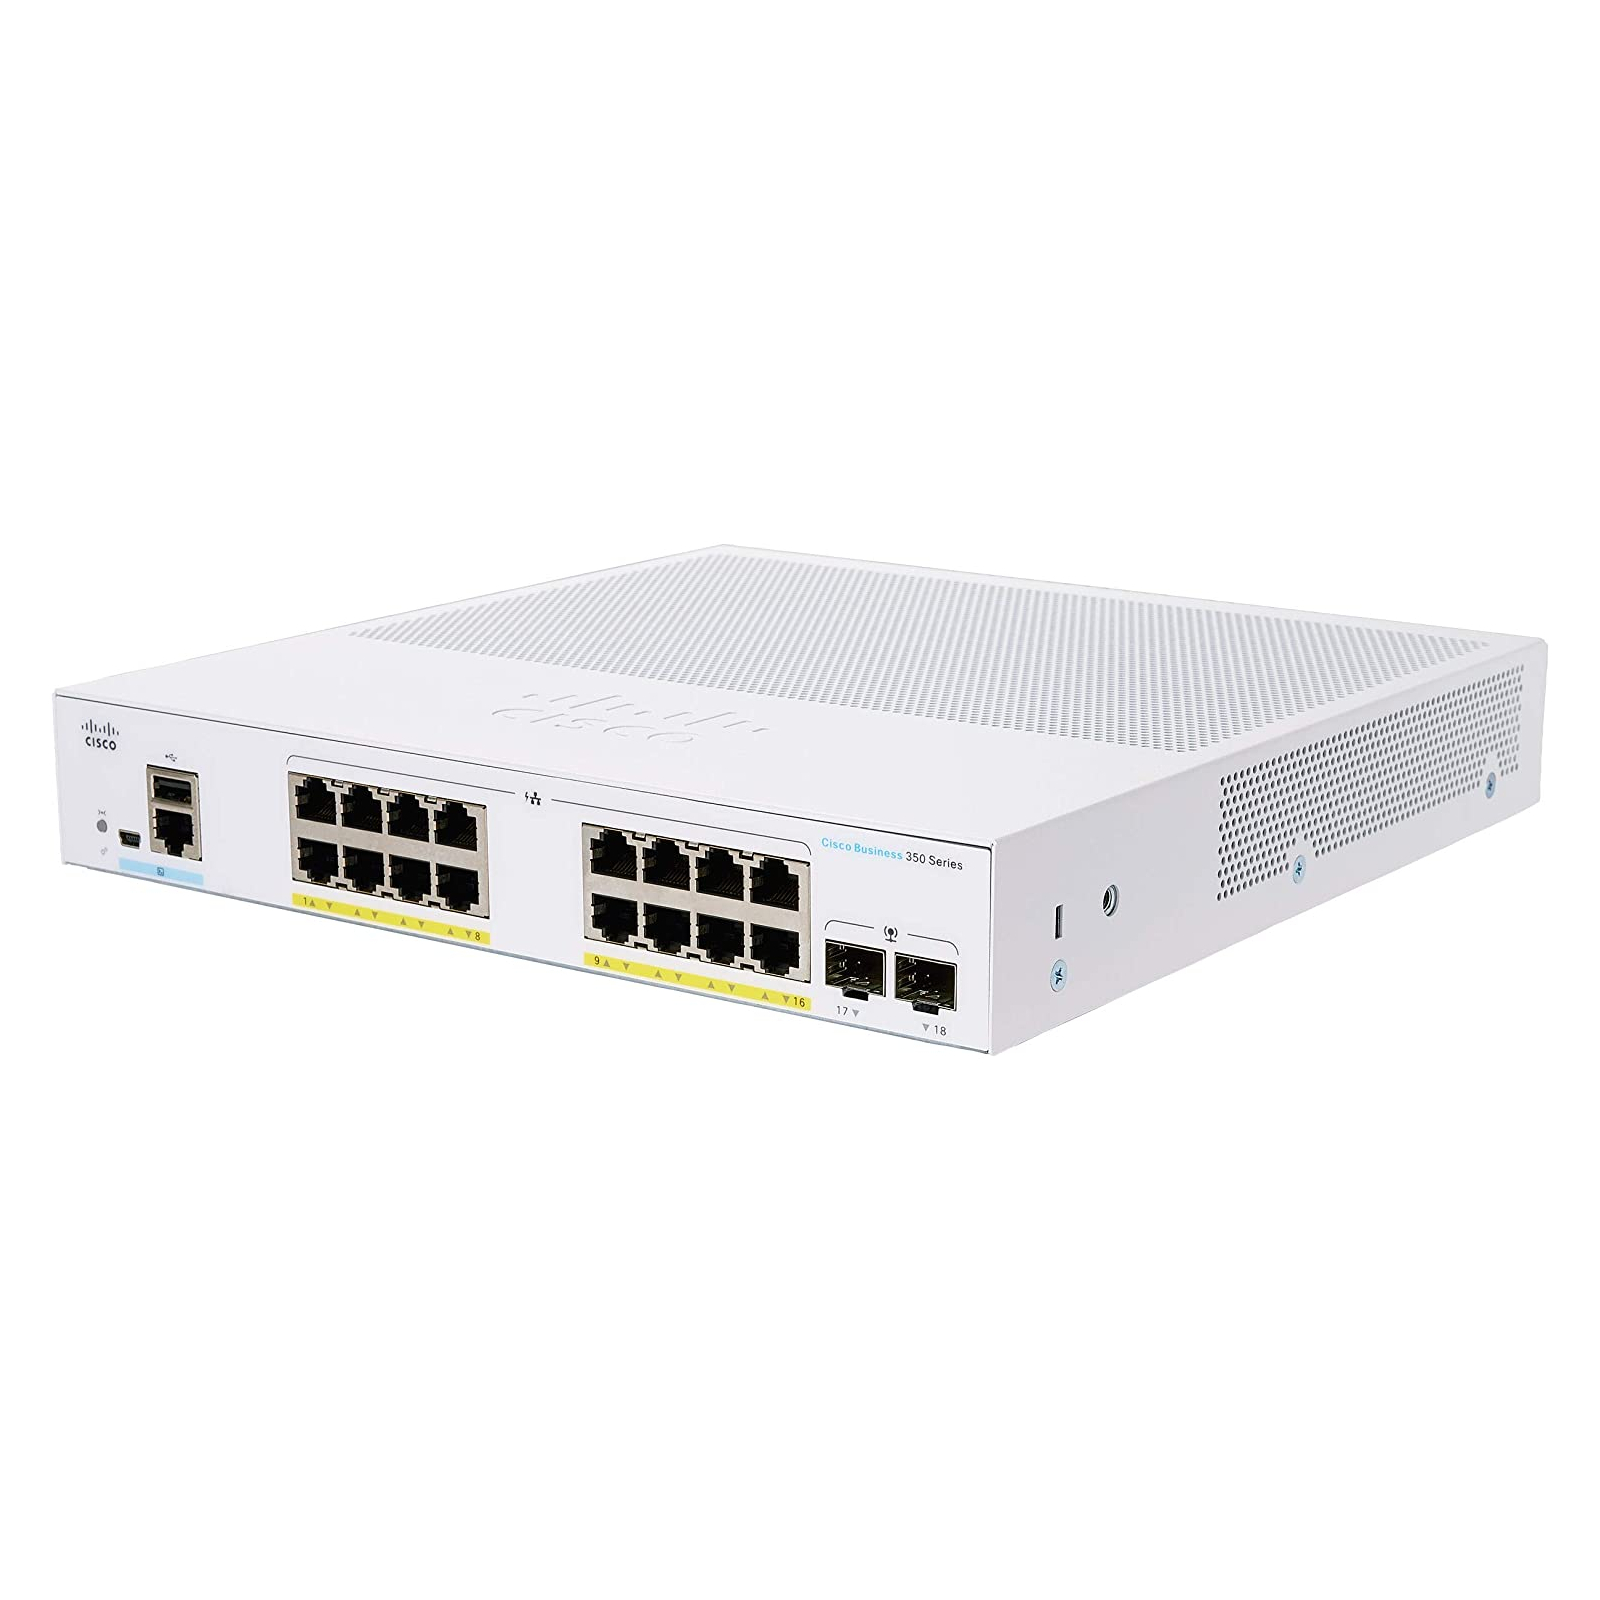 Коммутатор сетевой Cisco CBS350 Managed 16-port GE, PoE, 2x1G SFP (CBS350-16P-2G-EU)